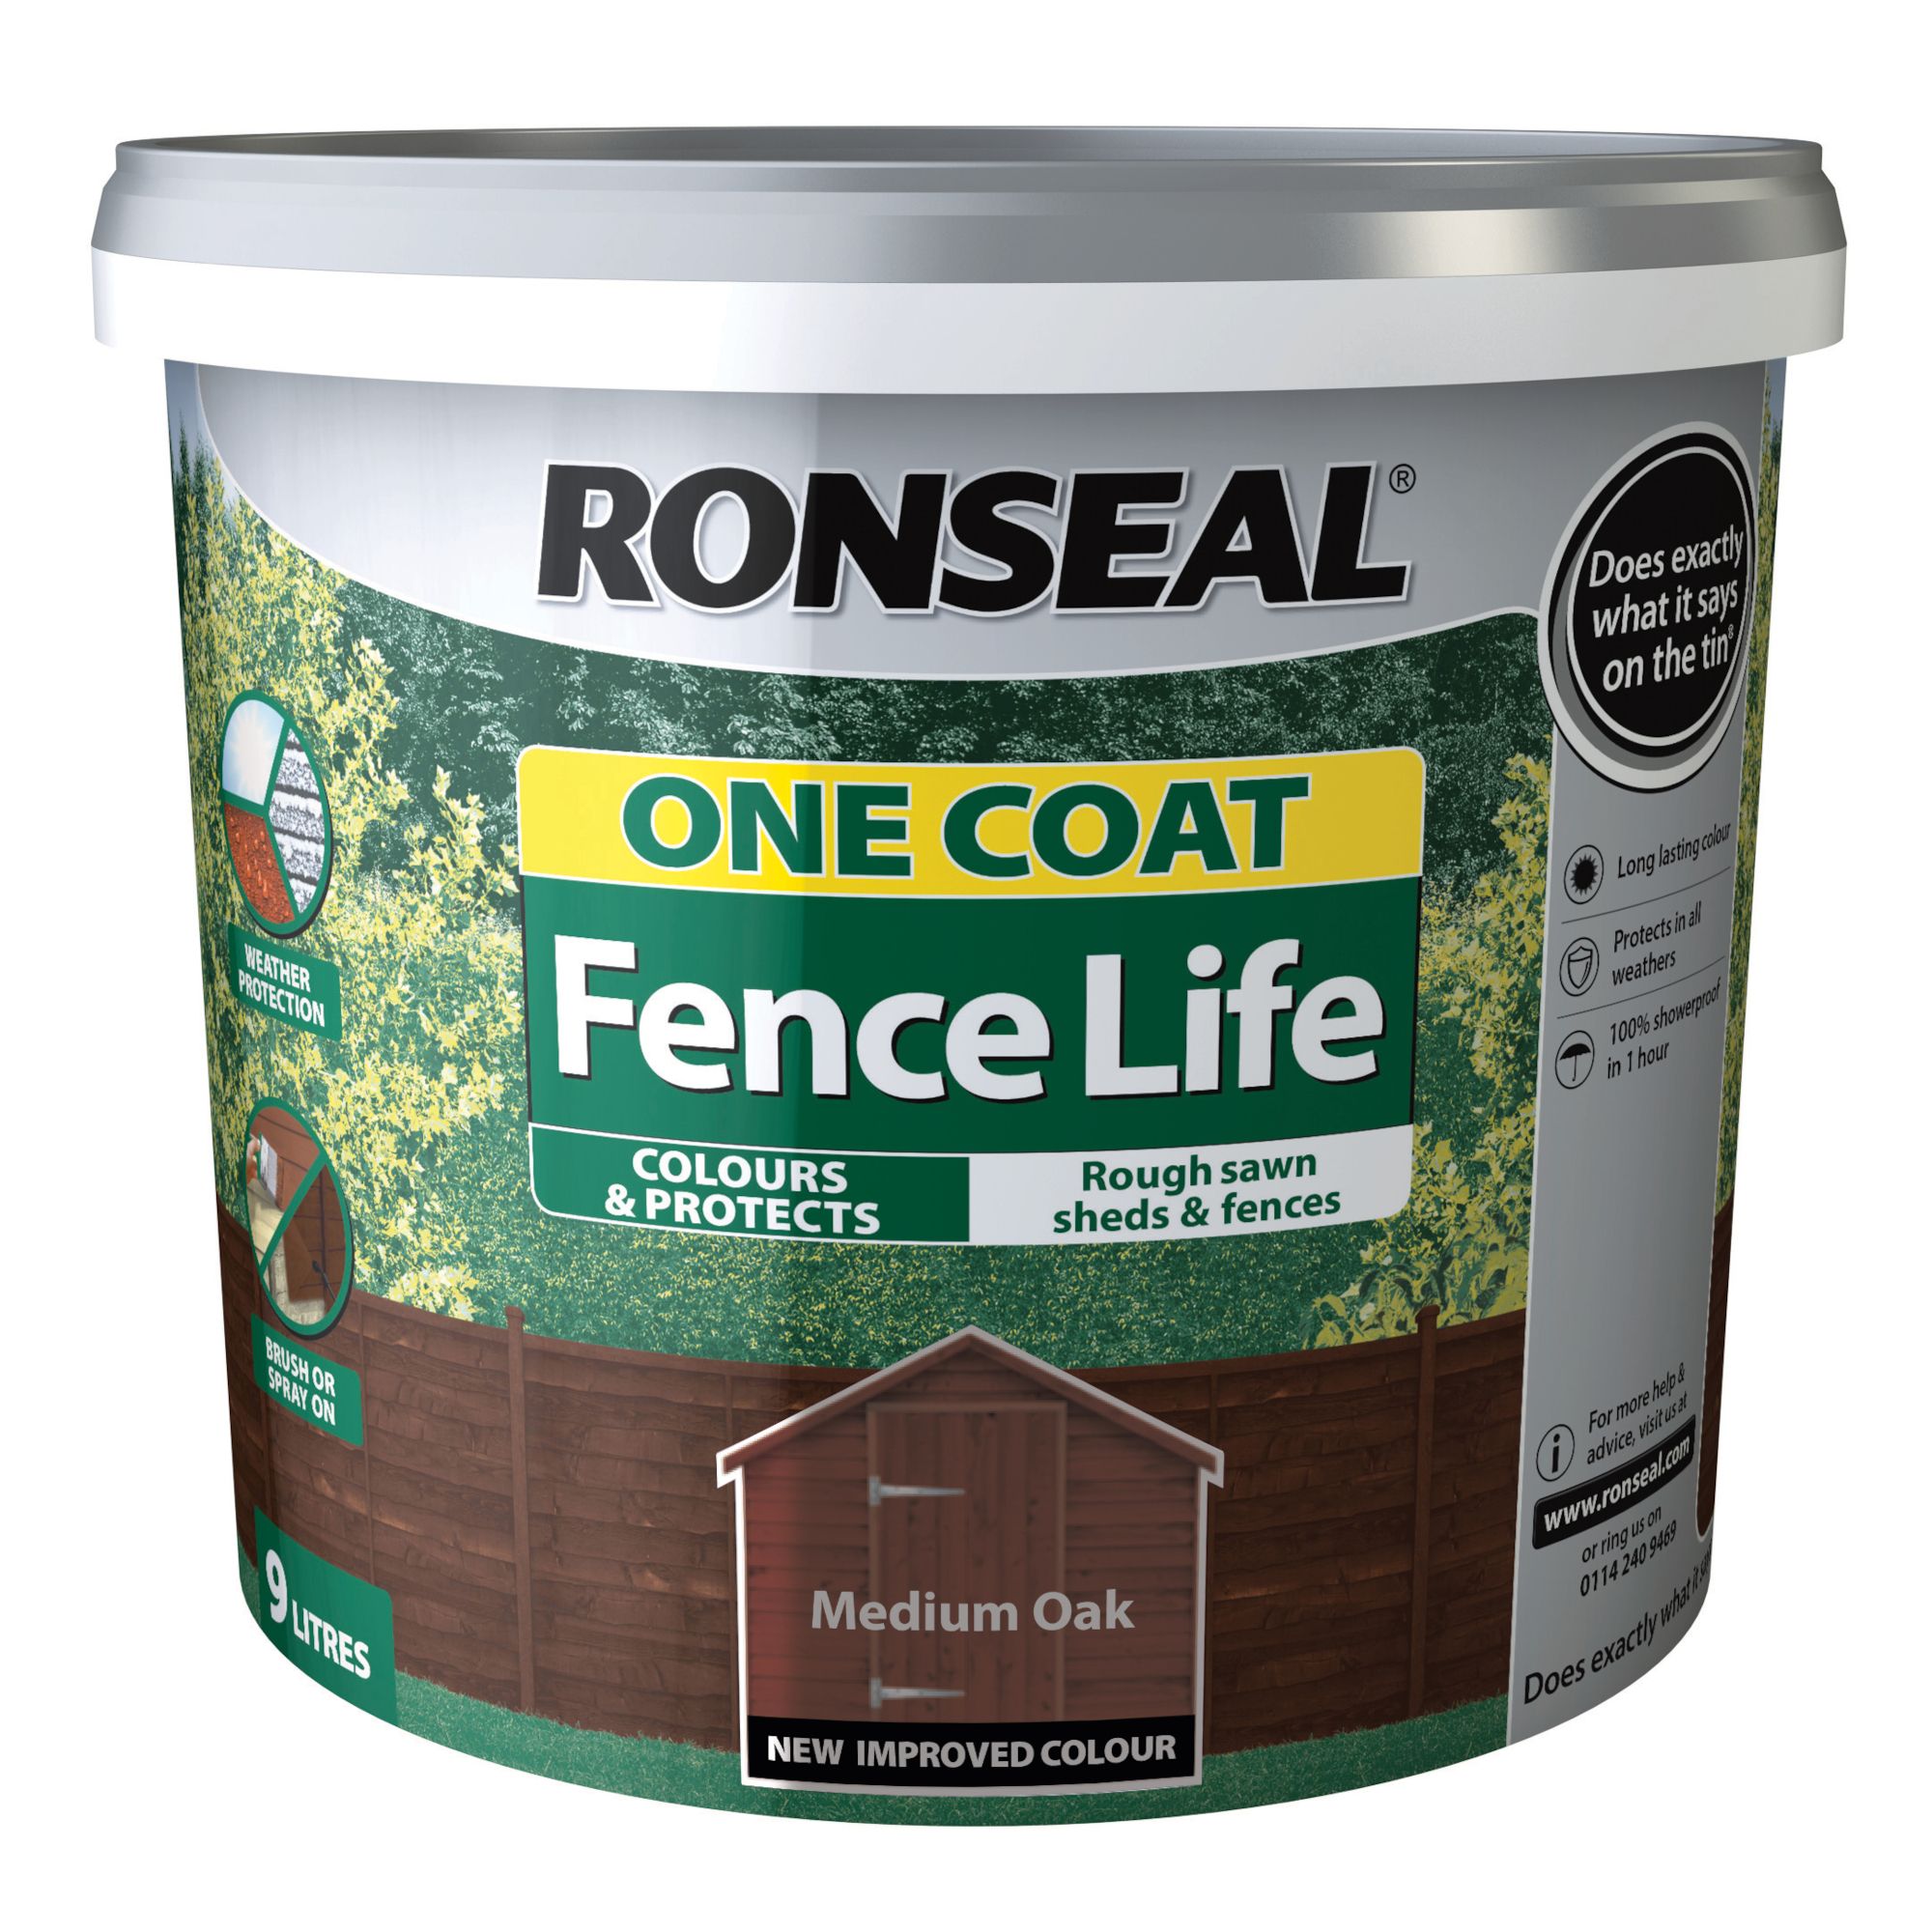 Ronseal One Coat Fence Life Medium oak Matt Exterior Wood paint, 9L Tub